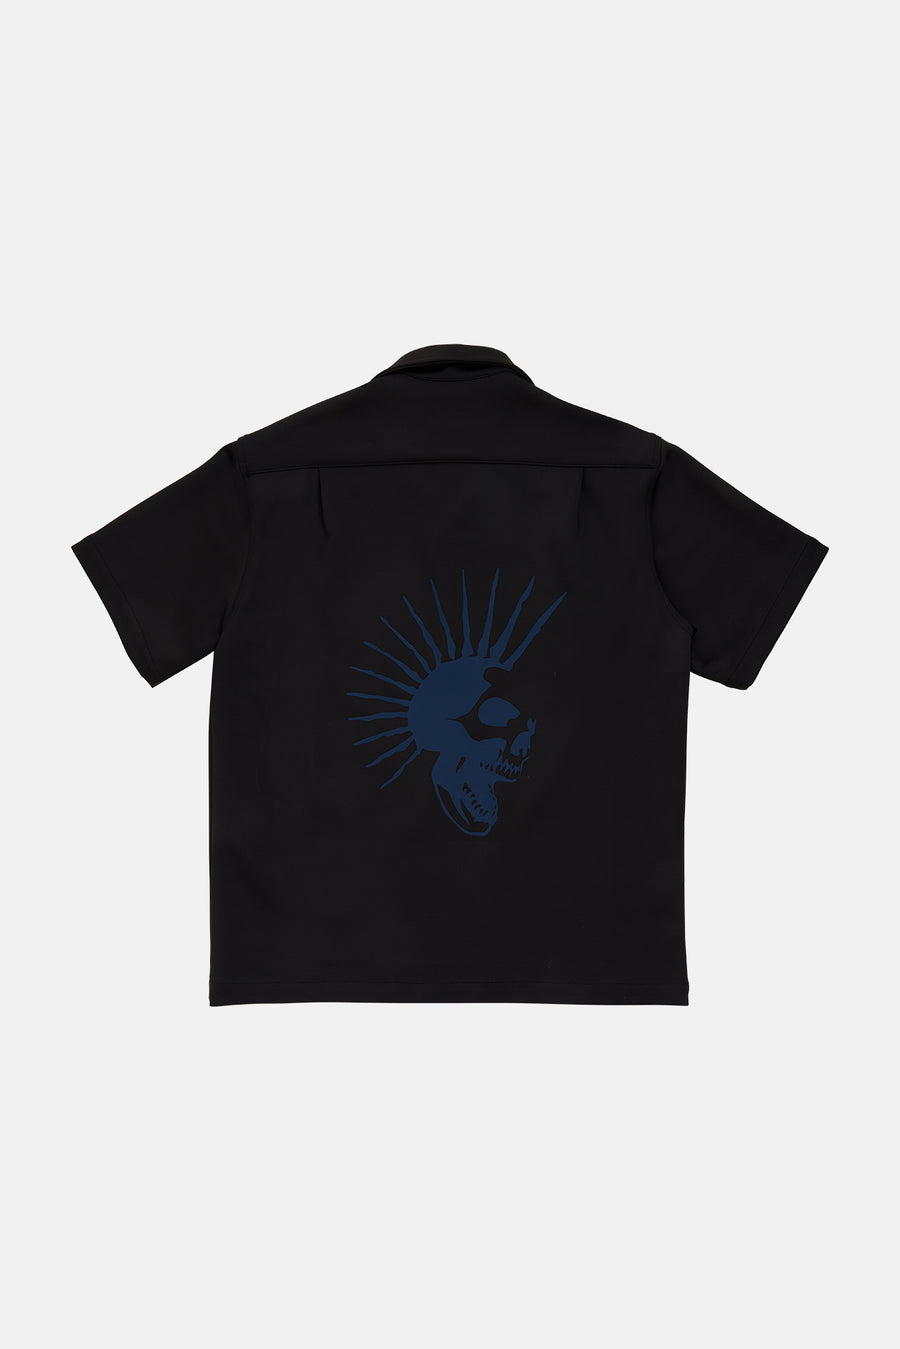 Neoprene Camp Shirt Black - blueandcream